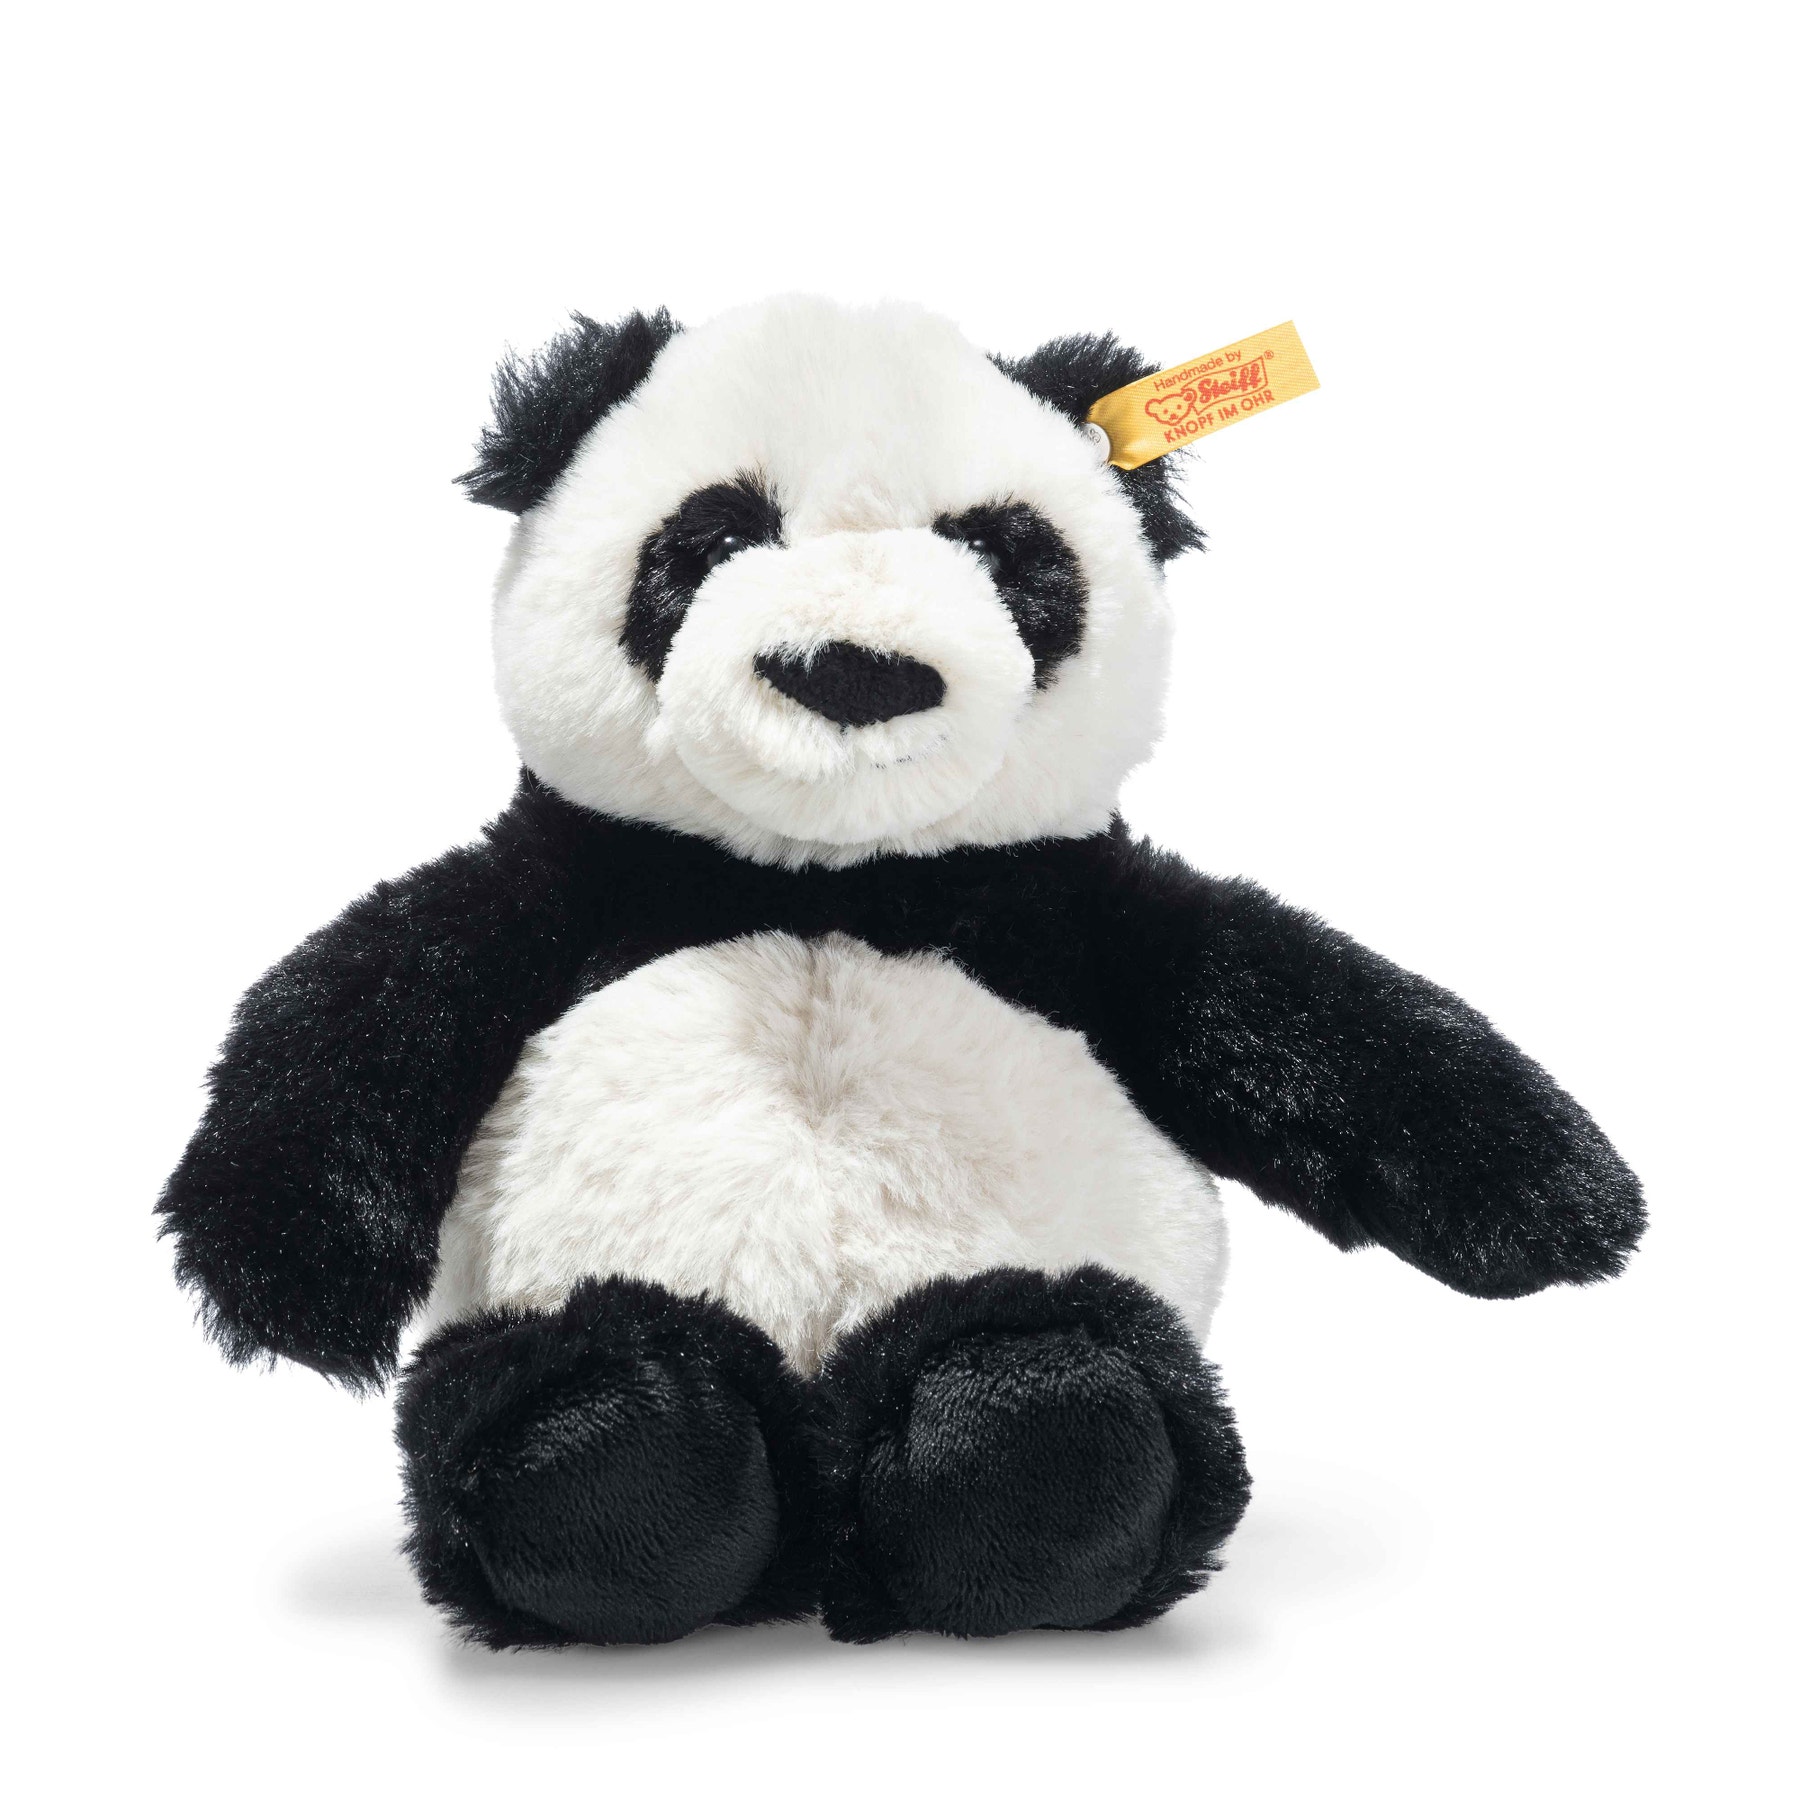 STEIFF 075773 Ming Panda 28cm weiß schwarz Soft Cuddly Friends 